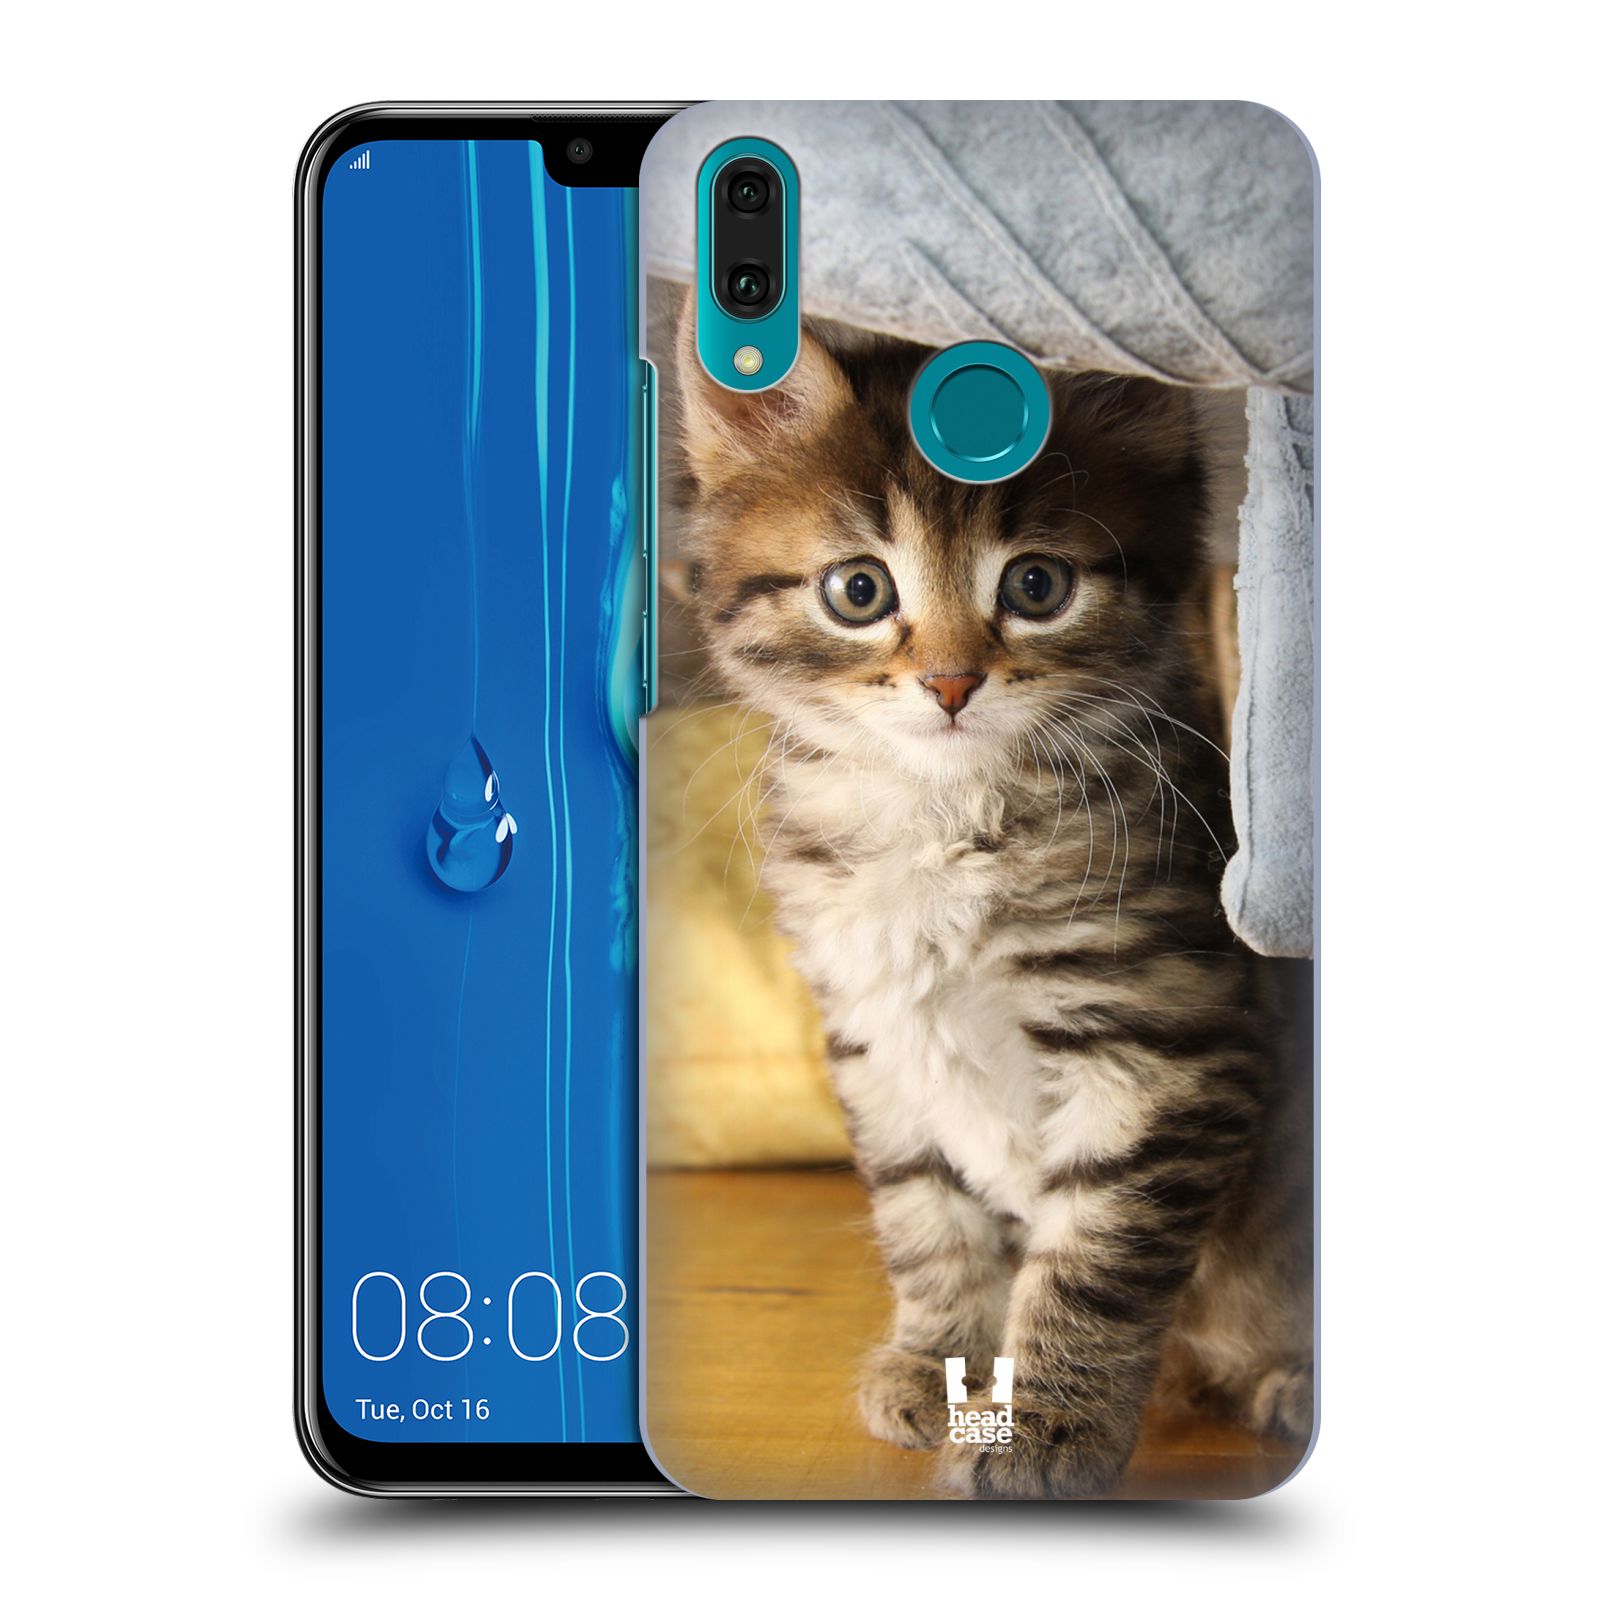 Pouzdro na mobil Huawei Y9 2019 - HEAD CASE - vzor Kočičky koťata foto mourek